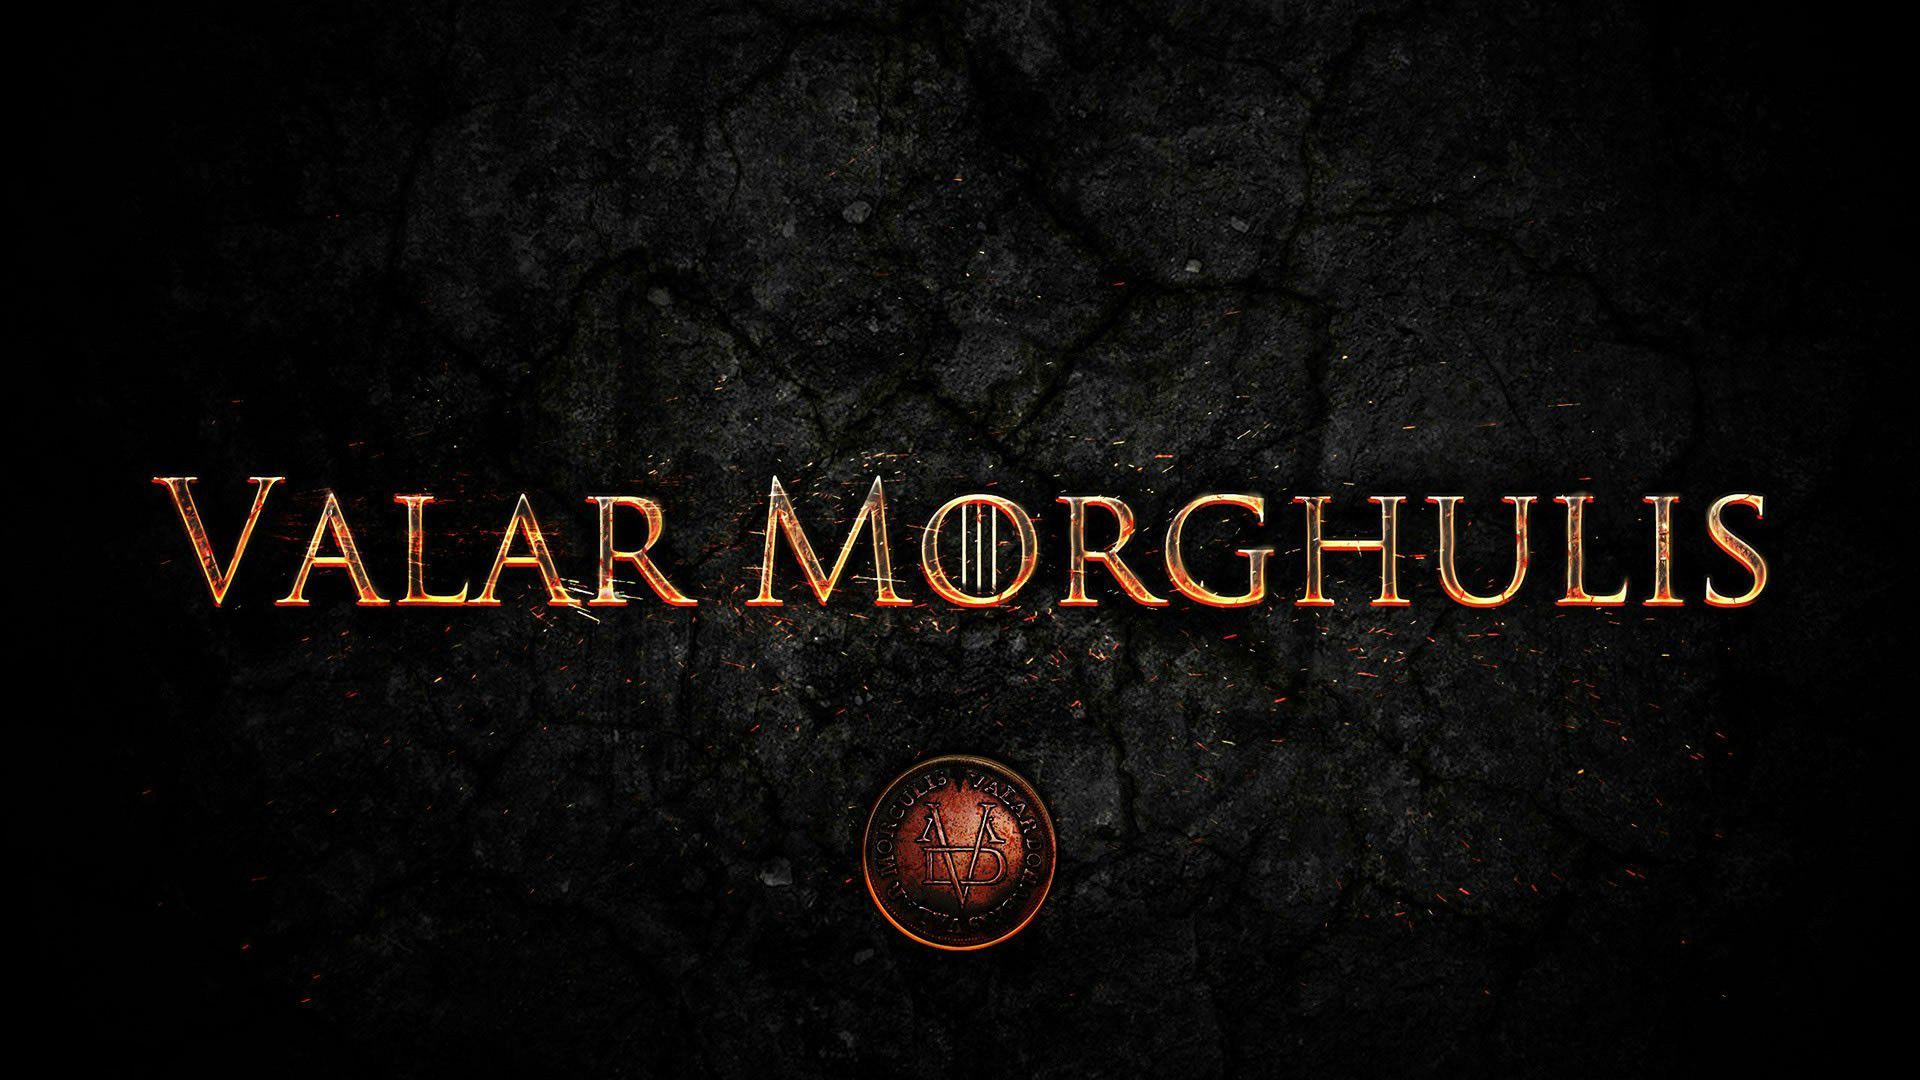 Juego de tronos Season Valar Morghulis Wallpaper